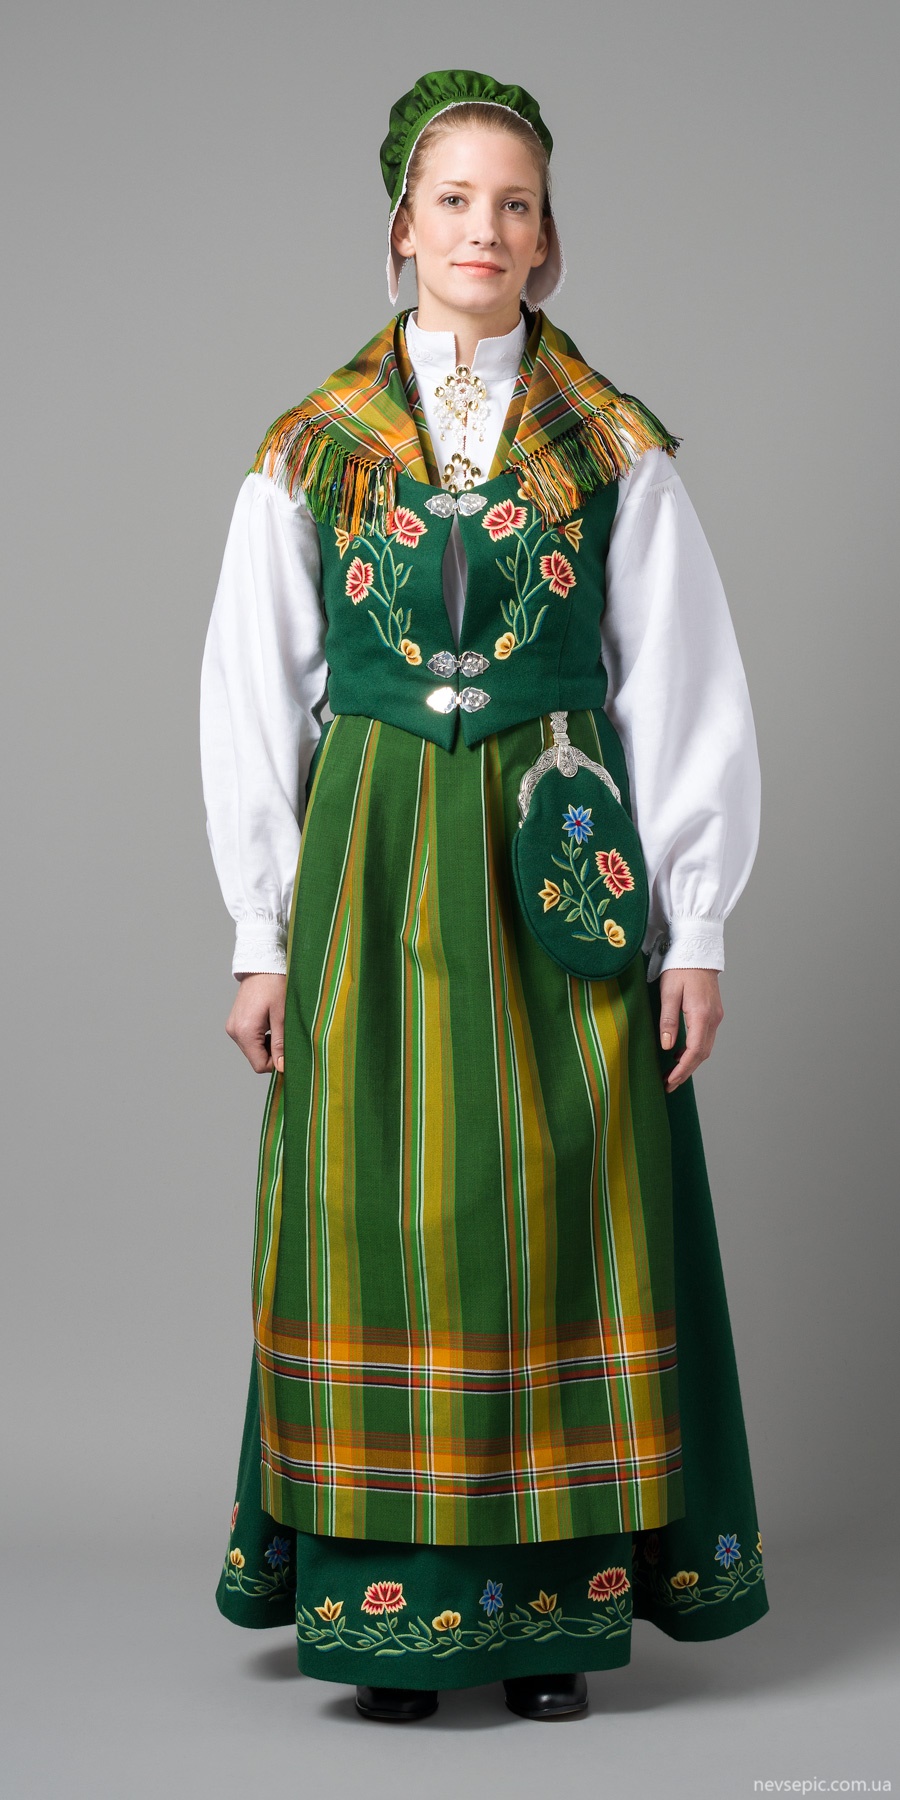 Traditional irish. Национальный костюм Северной Ирландии. Национальная одежда Северной Ирландии. Народный костюм Северной Ирландии. Традиционный костюм Северной Ирландии.